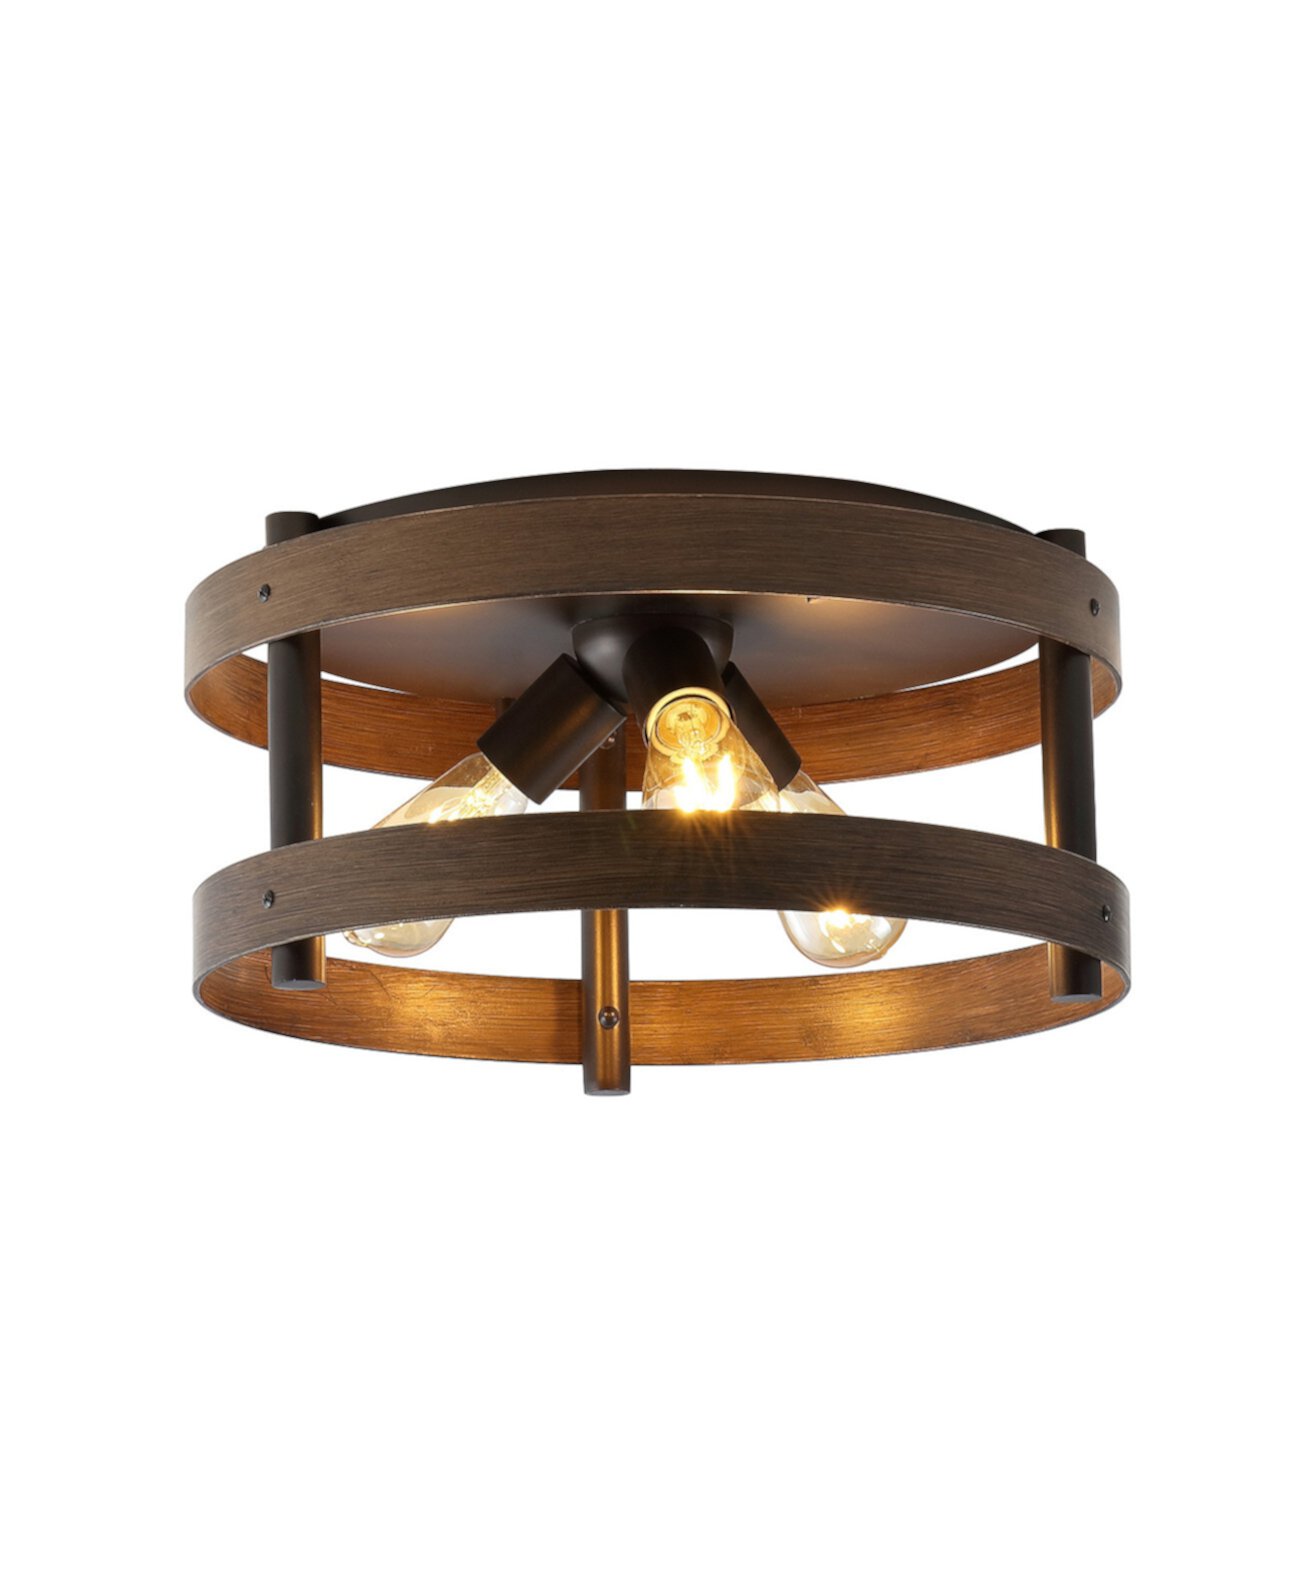 Cooper 16-дюймовый промышленный утюг с 3 лампами для заподлицо со светодиодной подсветкой для фермерского дома JONATHAN Y